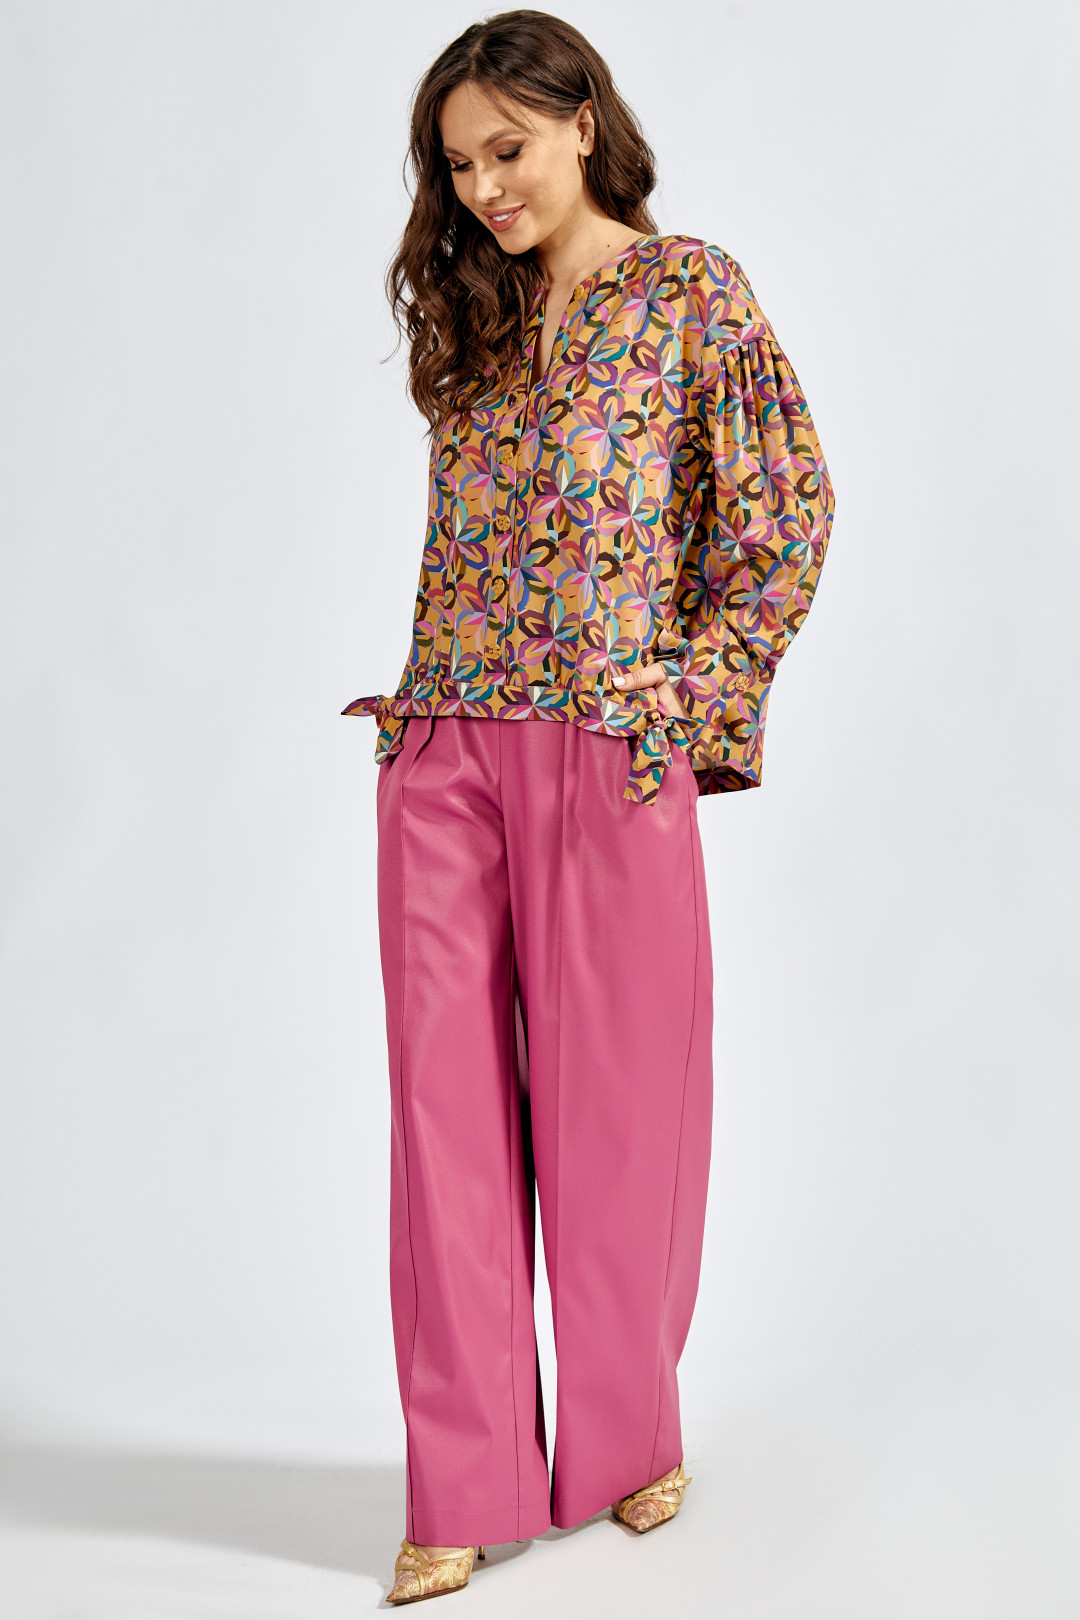 Блузка ТЭФФИ-стиль 1641 цветная фиалка